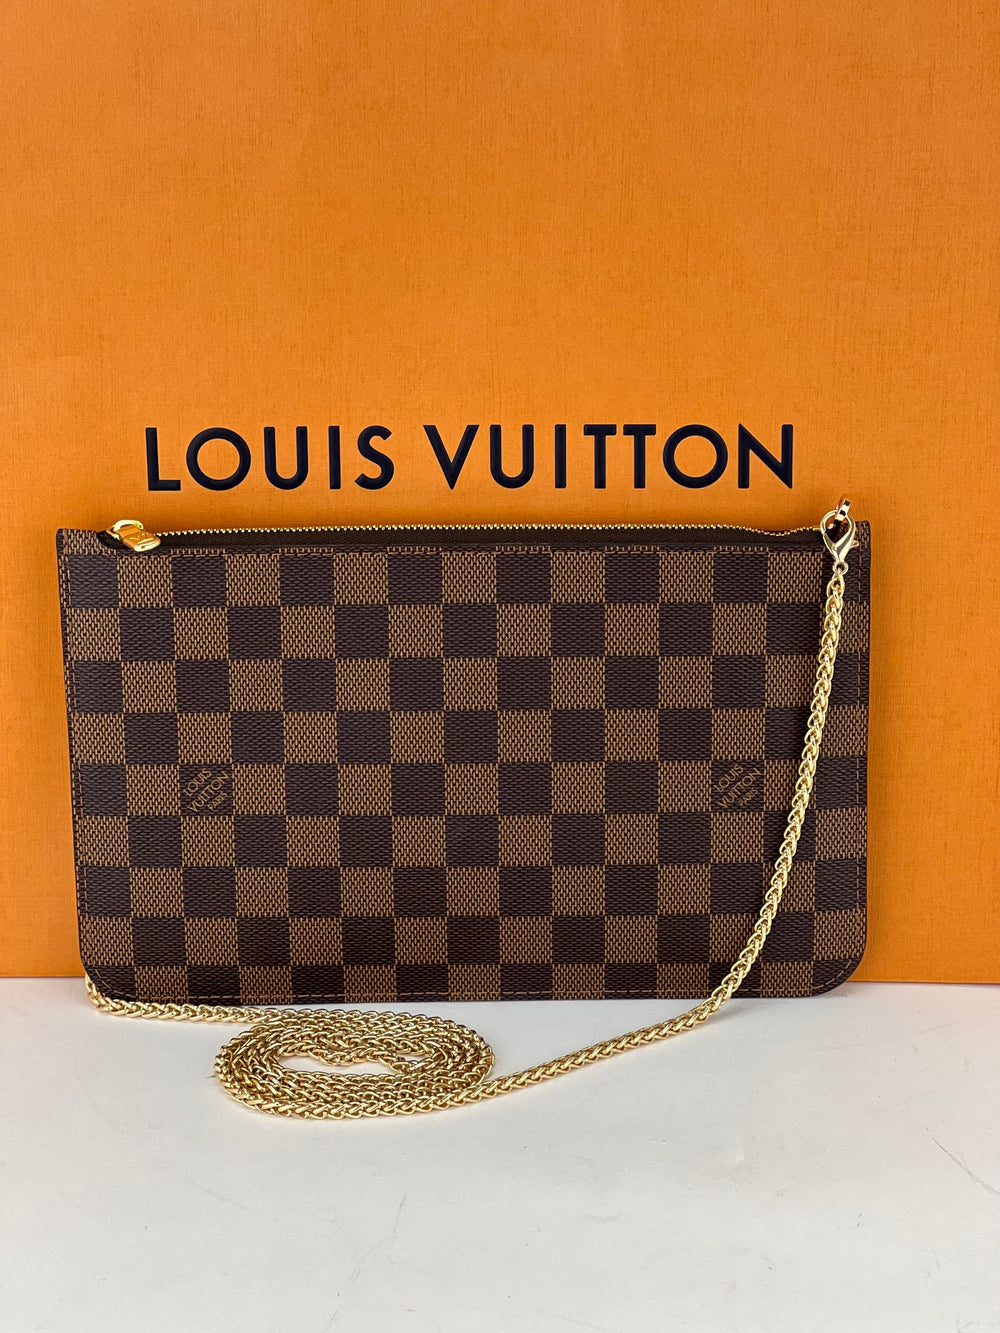 Authentic Louis Vuitton Damier Neverfull Pouch Purse Clutch Bag LV